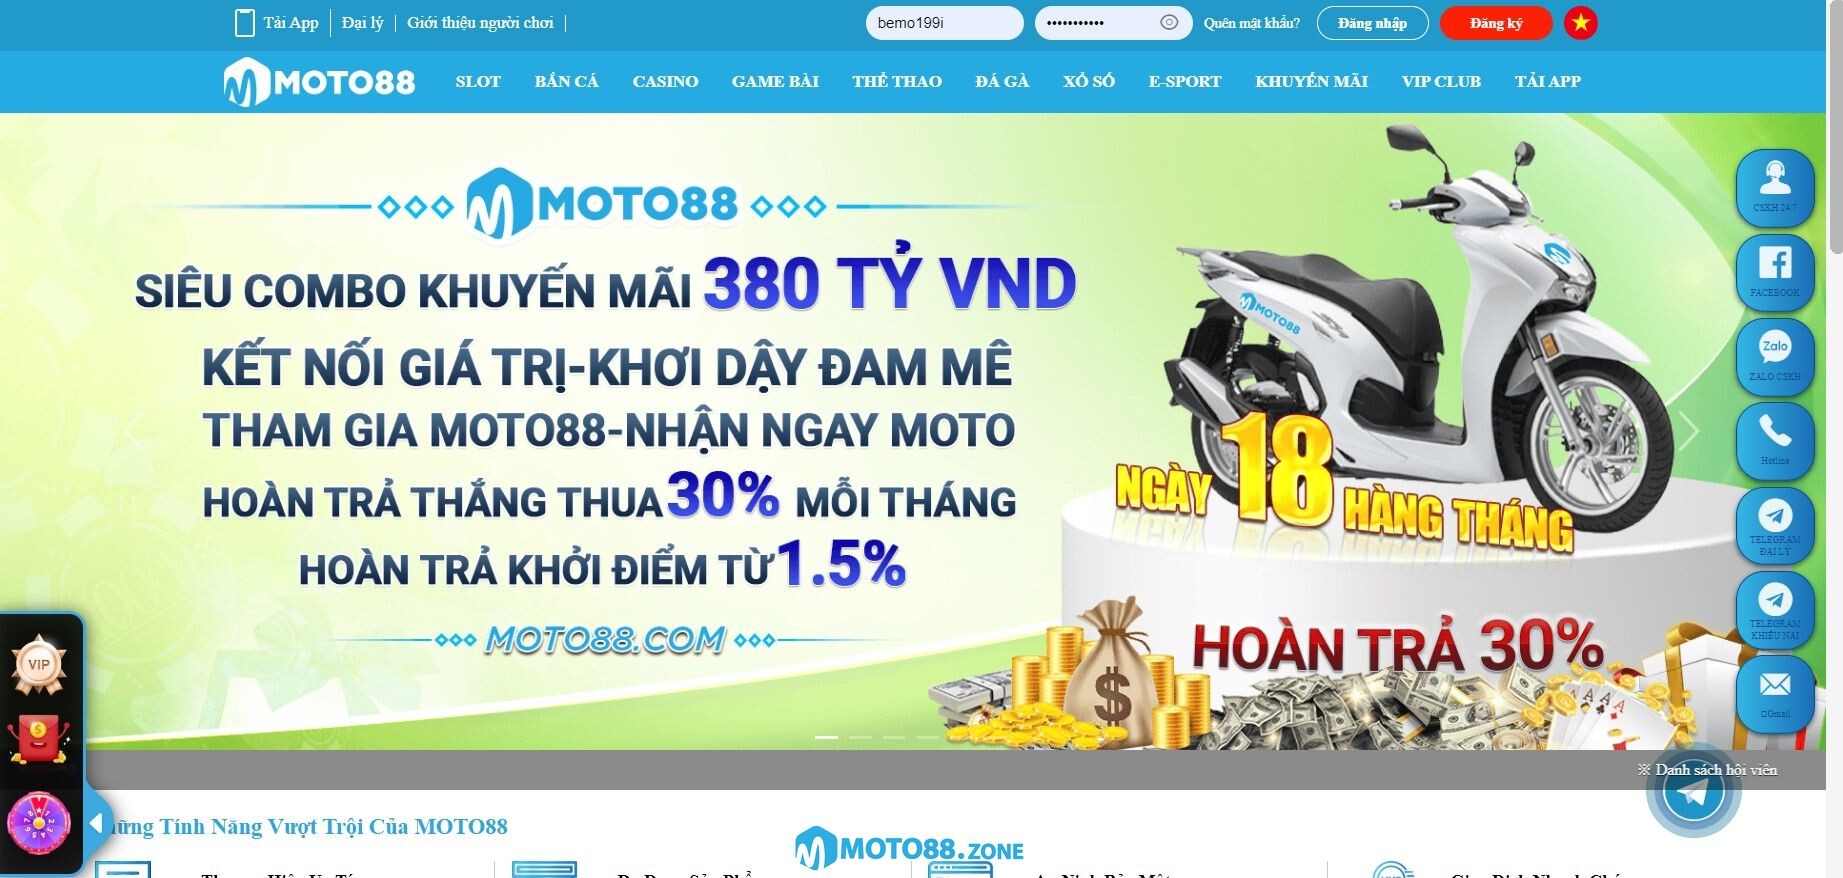 Nạp tiền Moto88 có gì hấp dẫn?